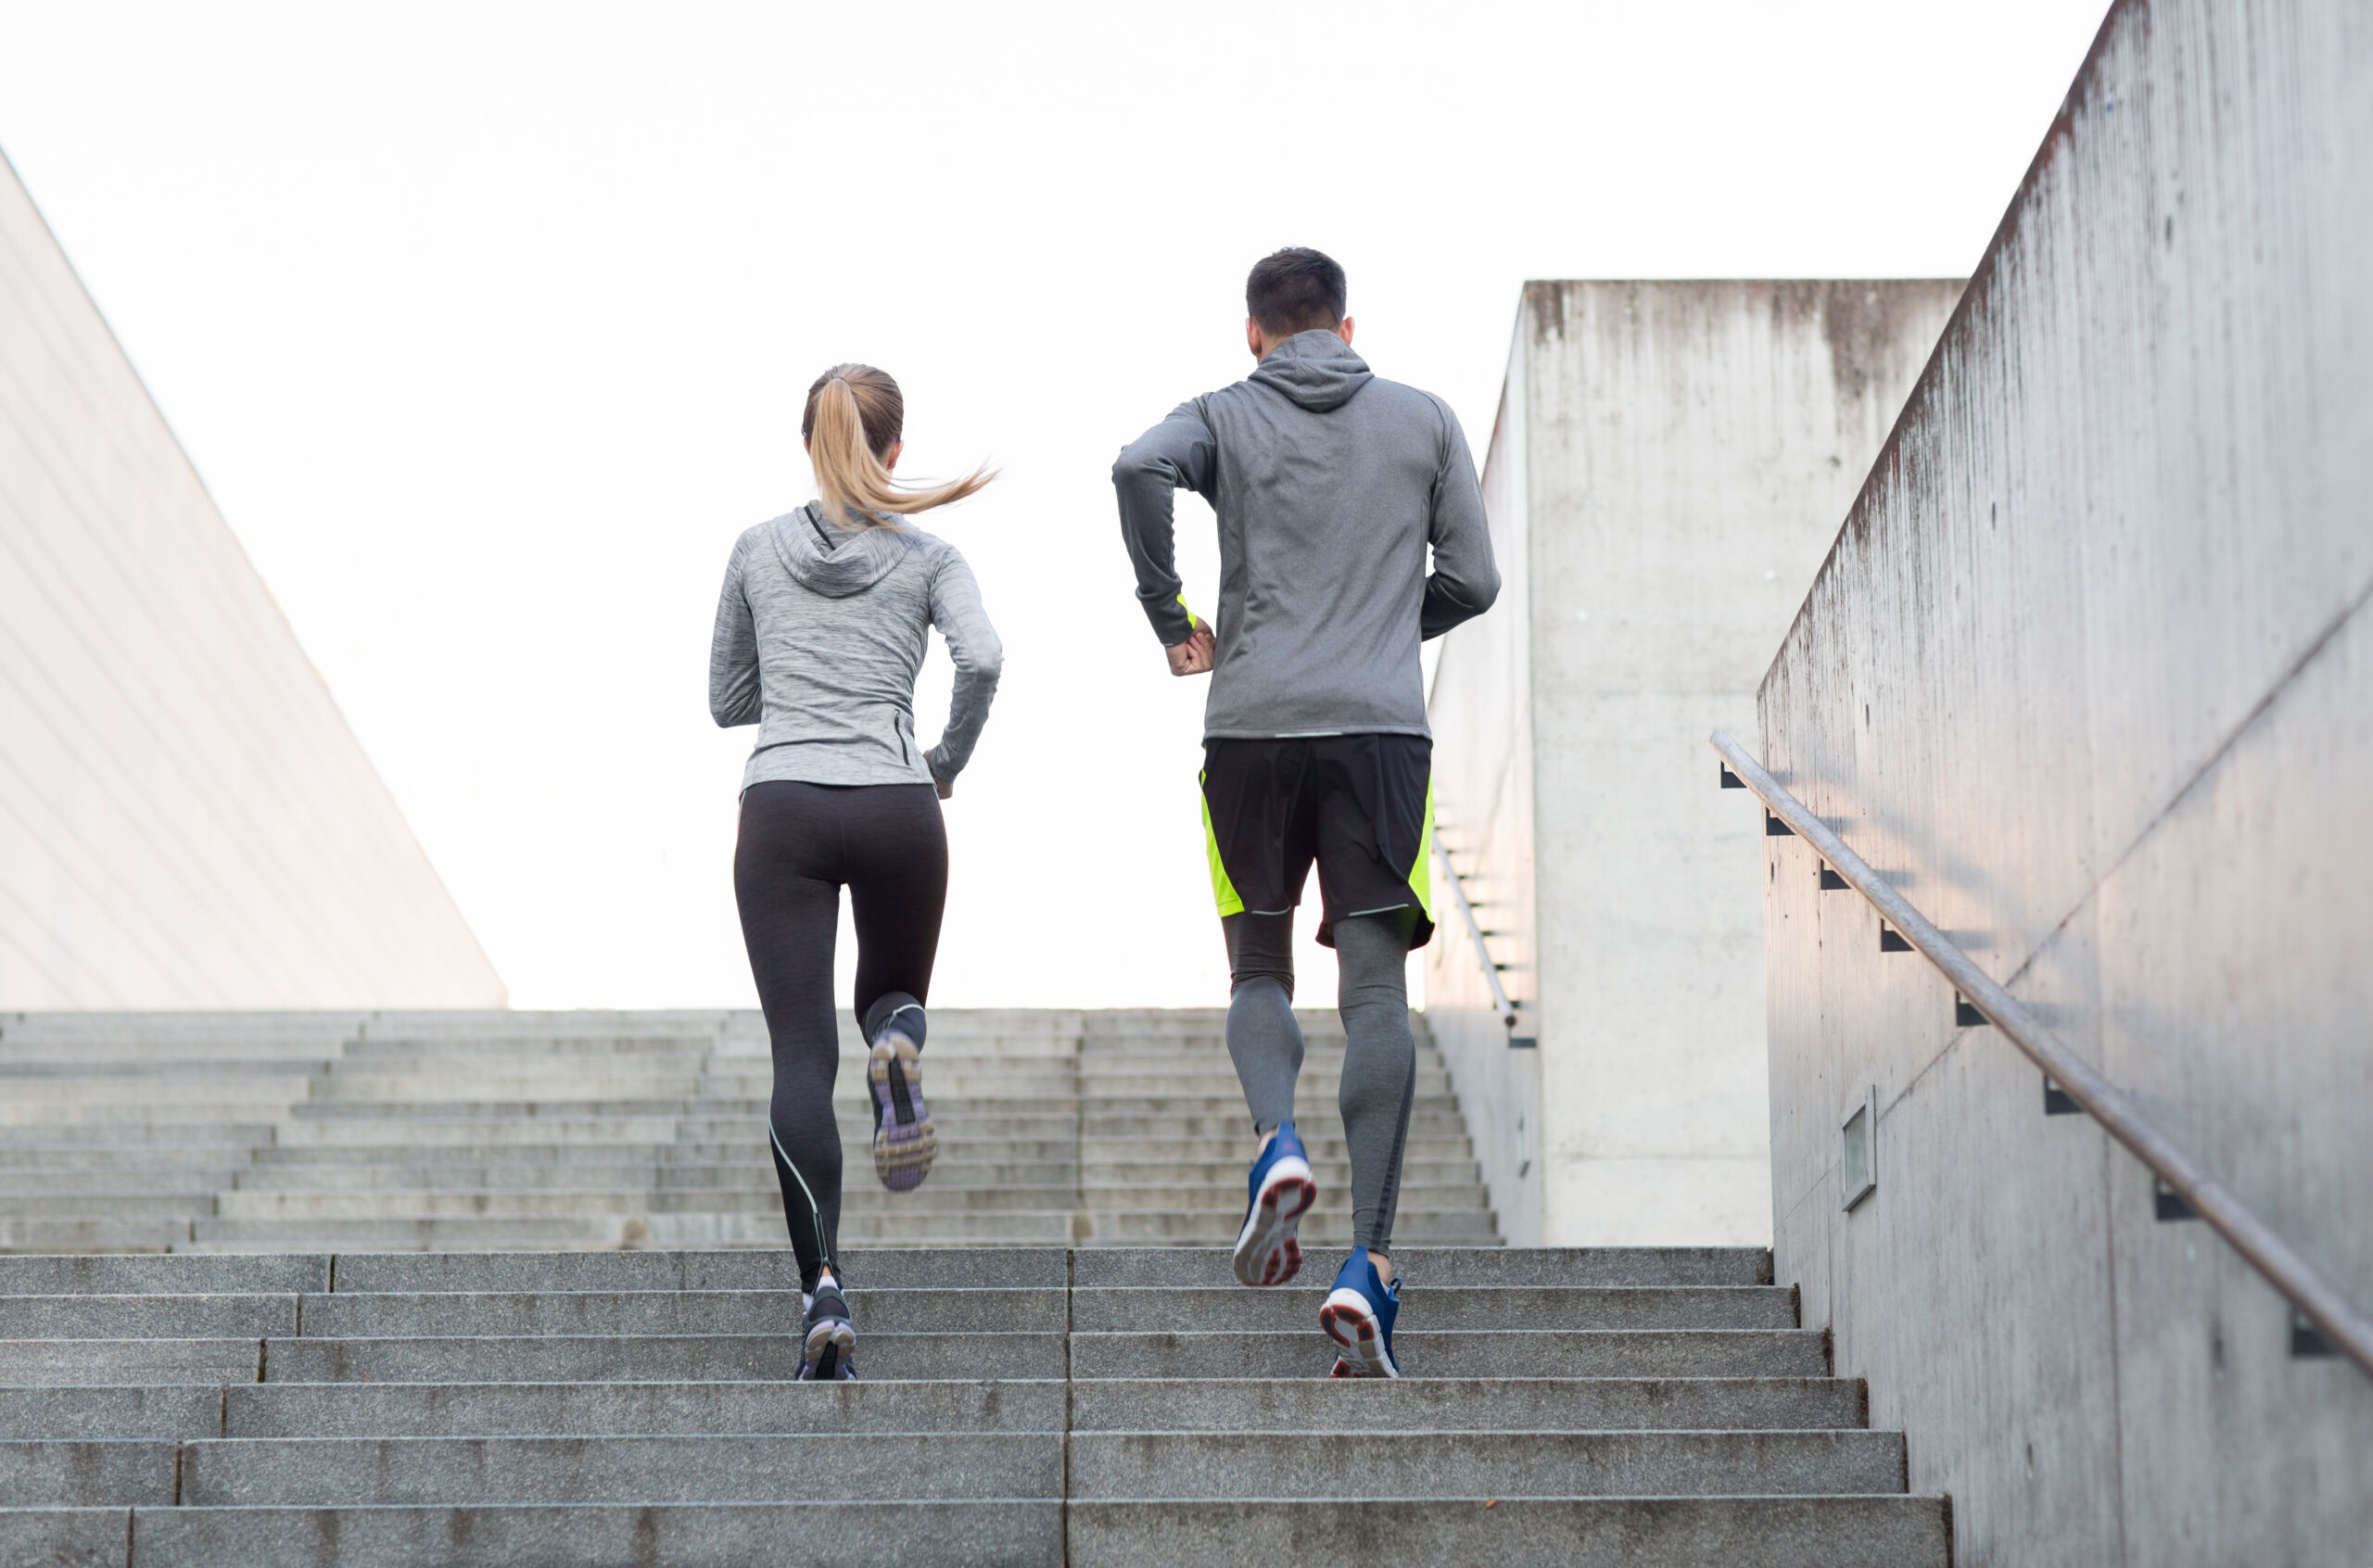 Aplikacje do biegania mogą wspierać i zachęcać do aktywności